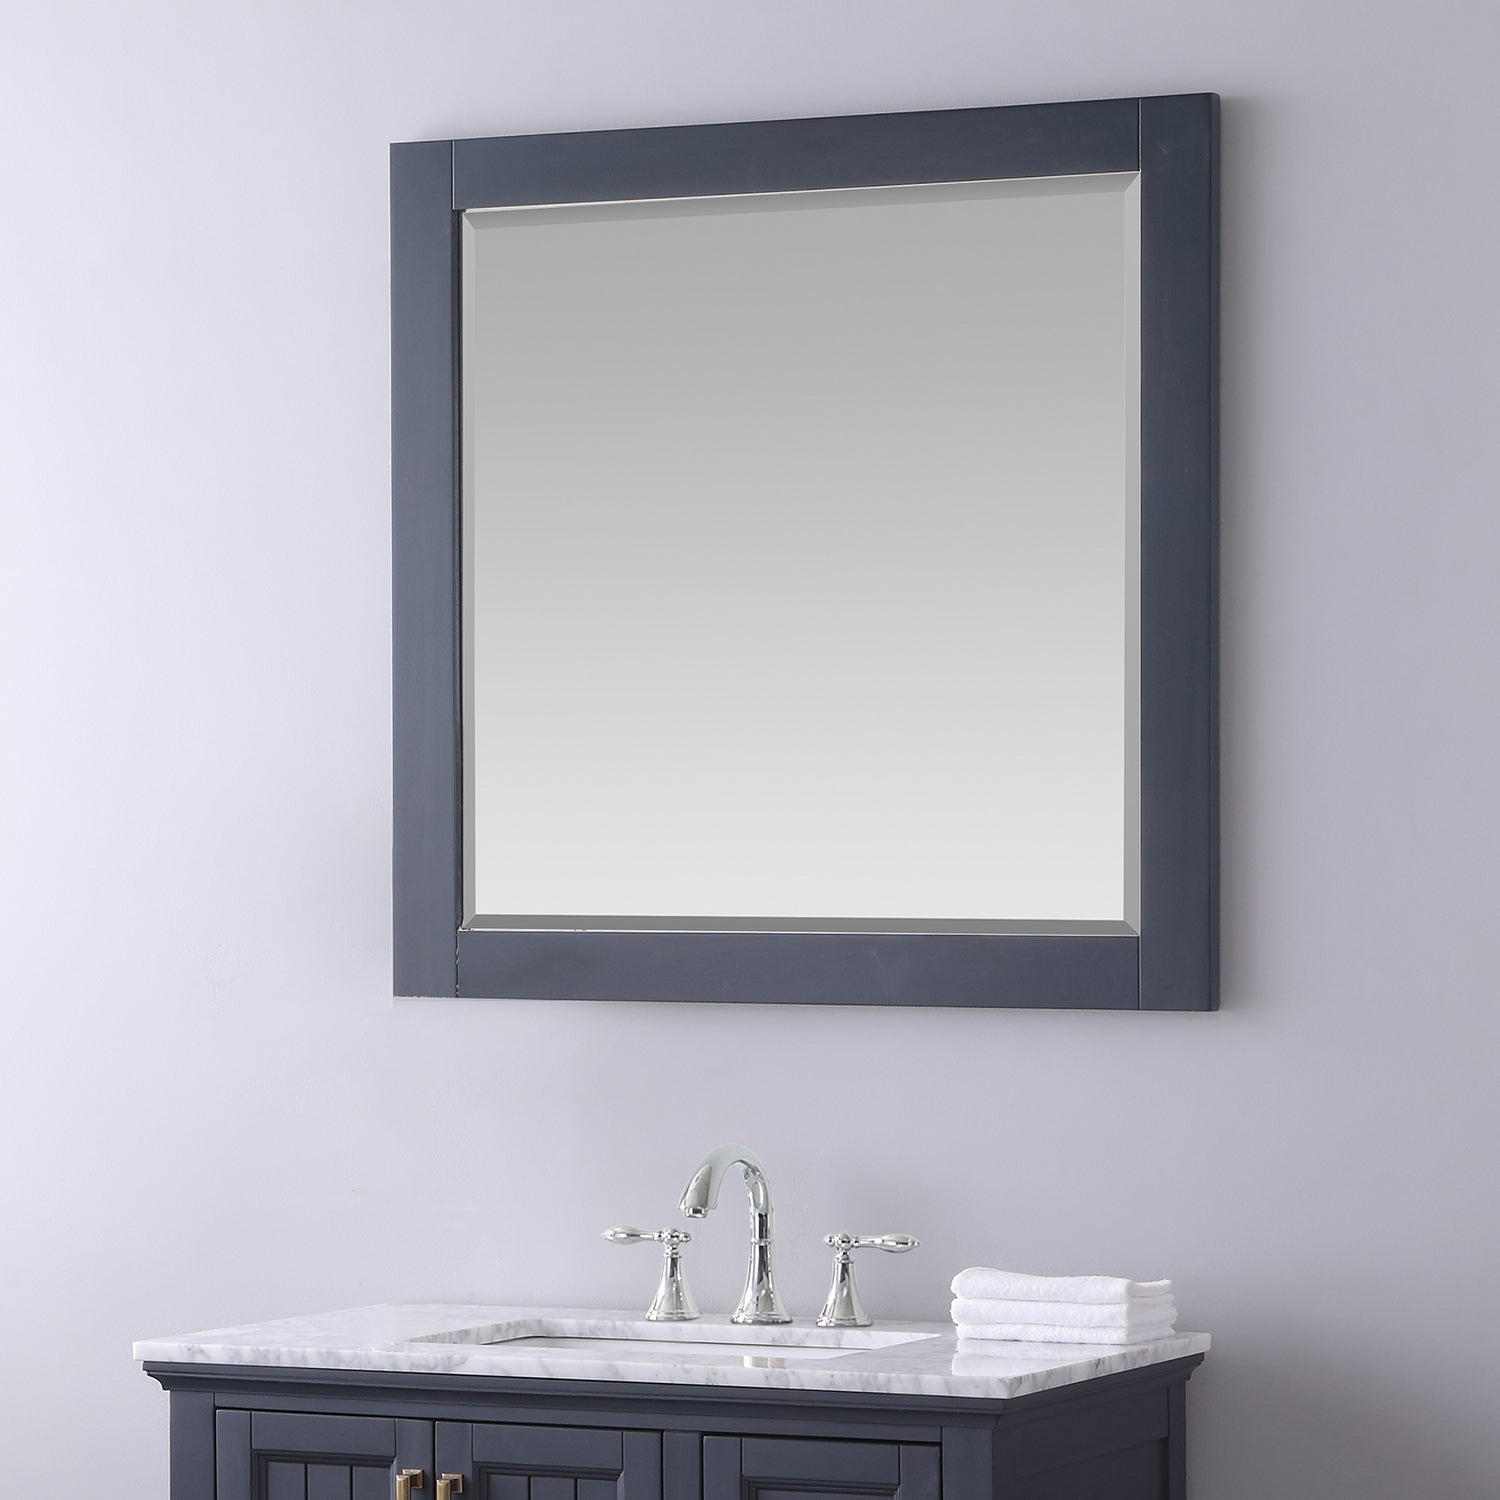 Maribella 34" Rectangular Bathroom Wood Framed Wall Mirror